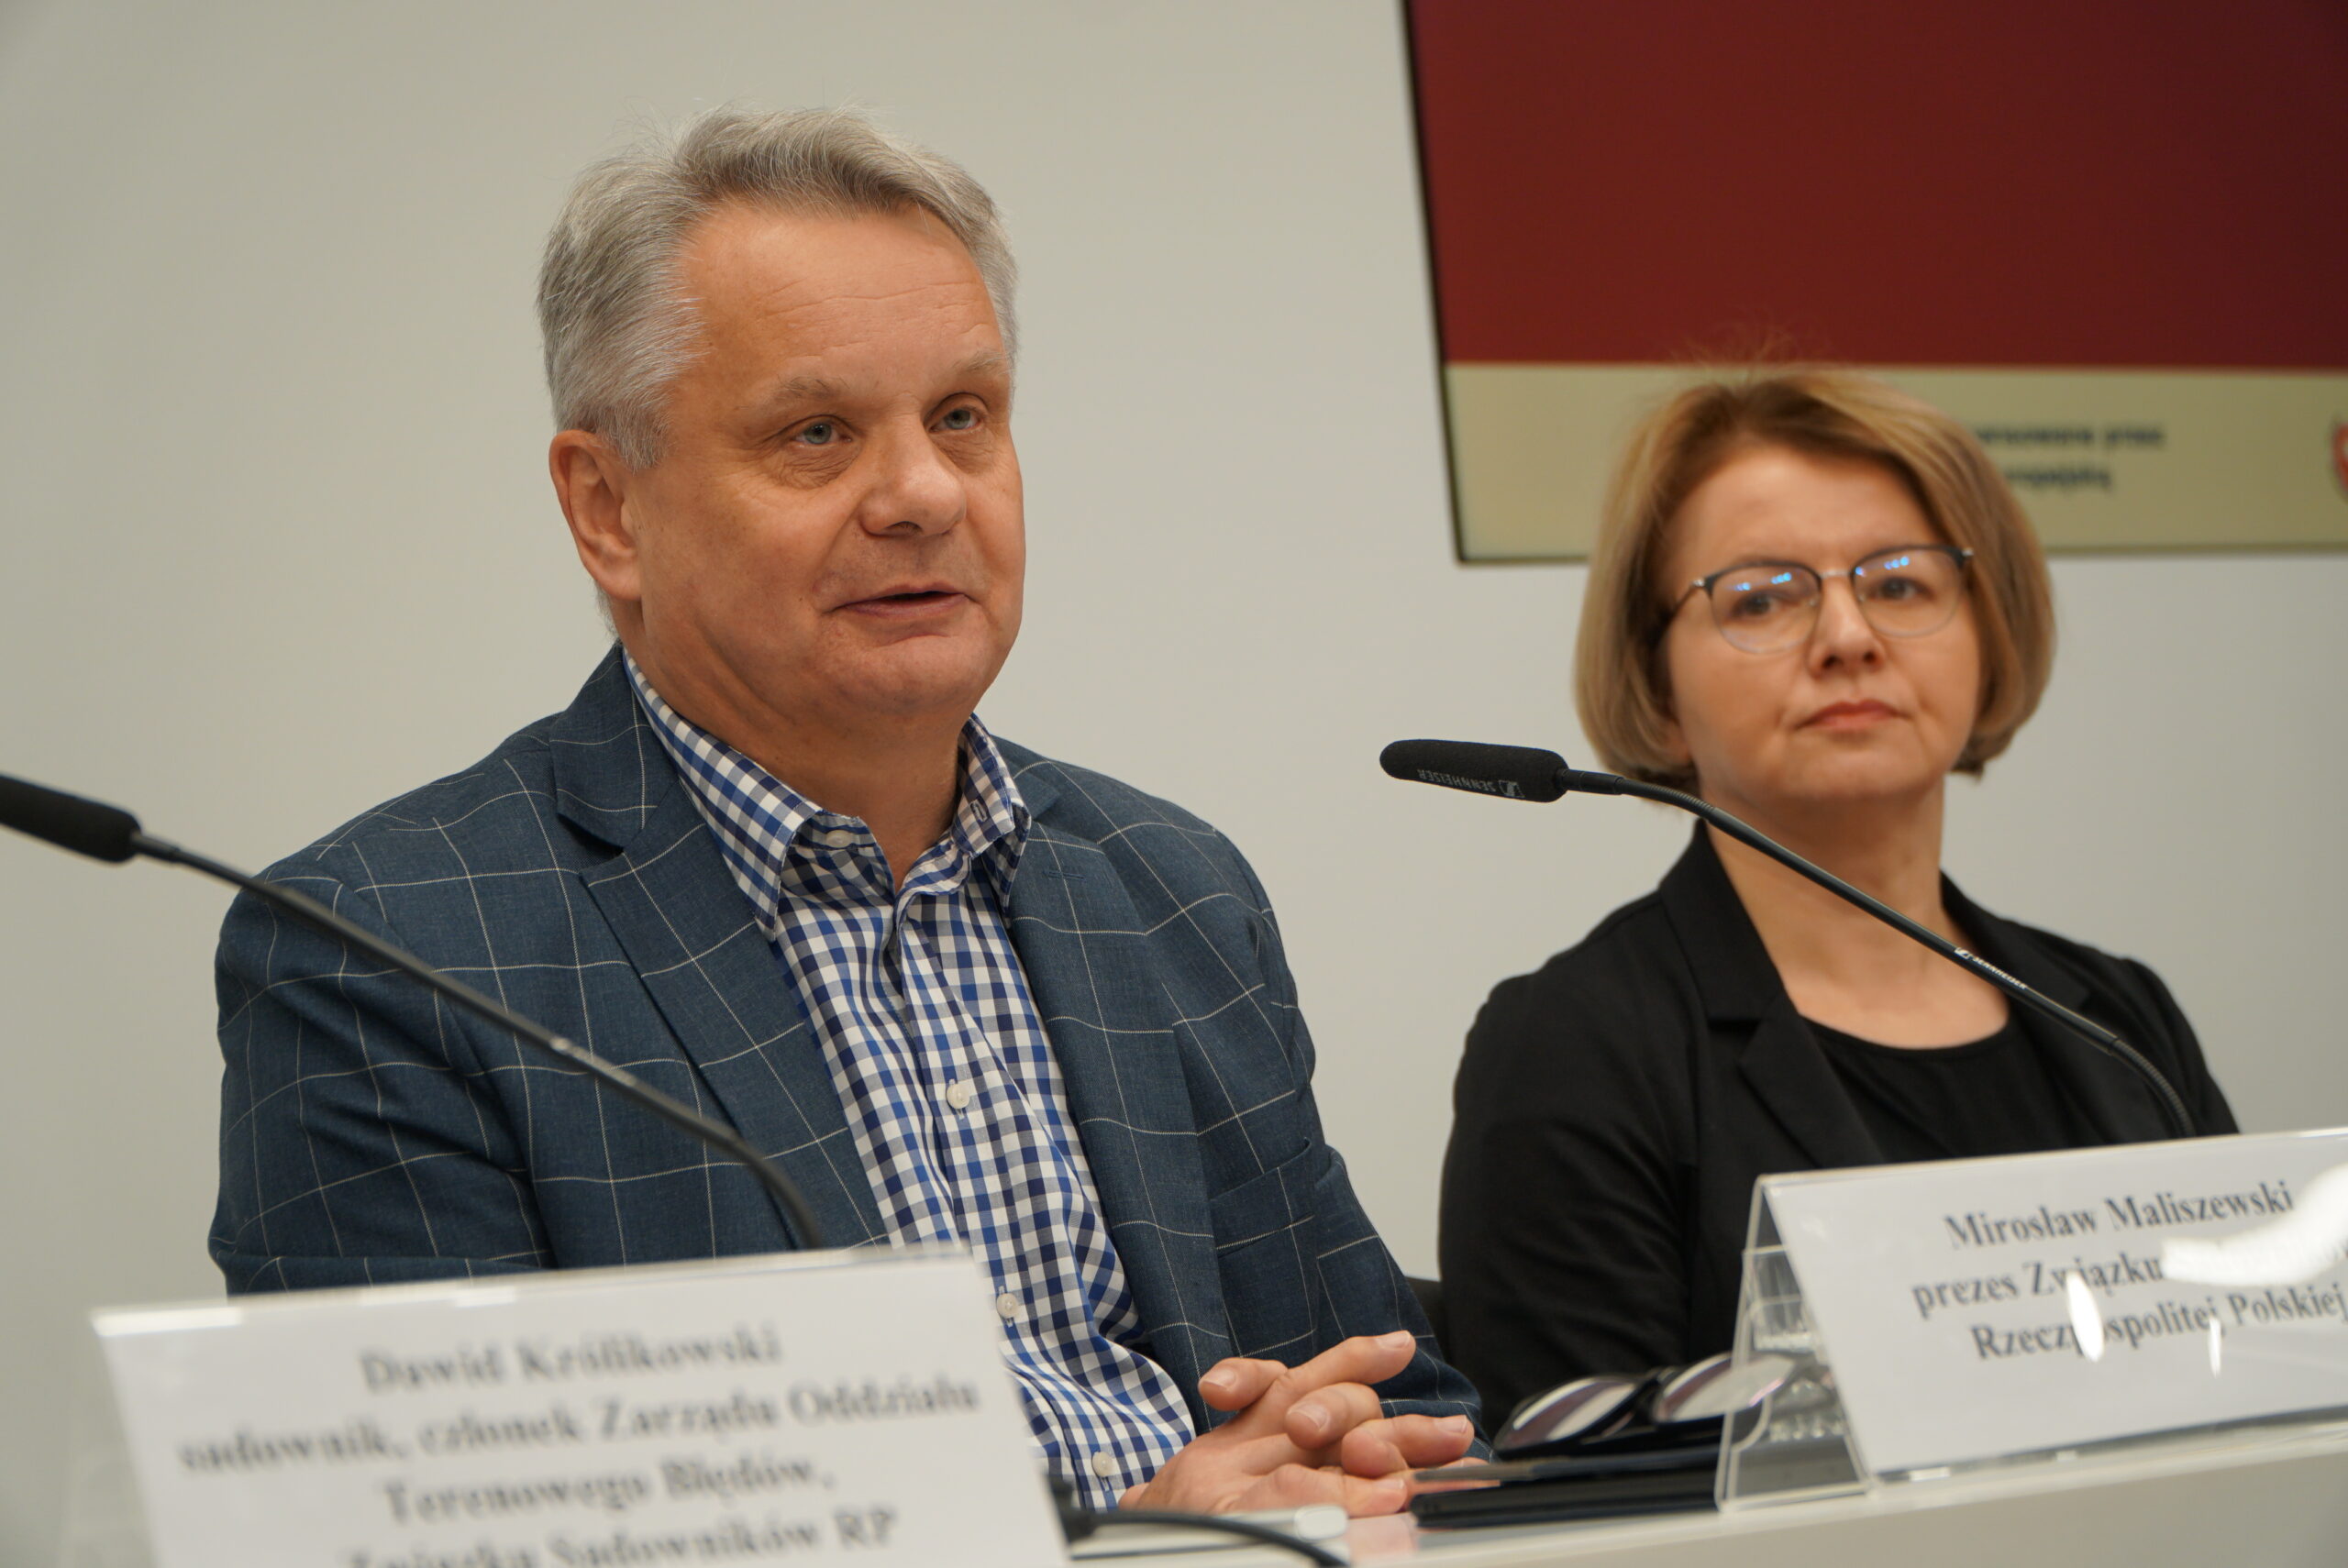 Mirosław Maliszewski, prezes Związku Sadowników Rzeczpospolitej Polskiej